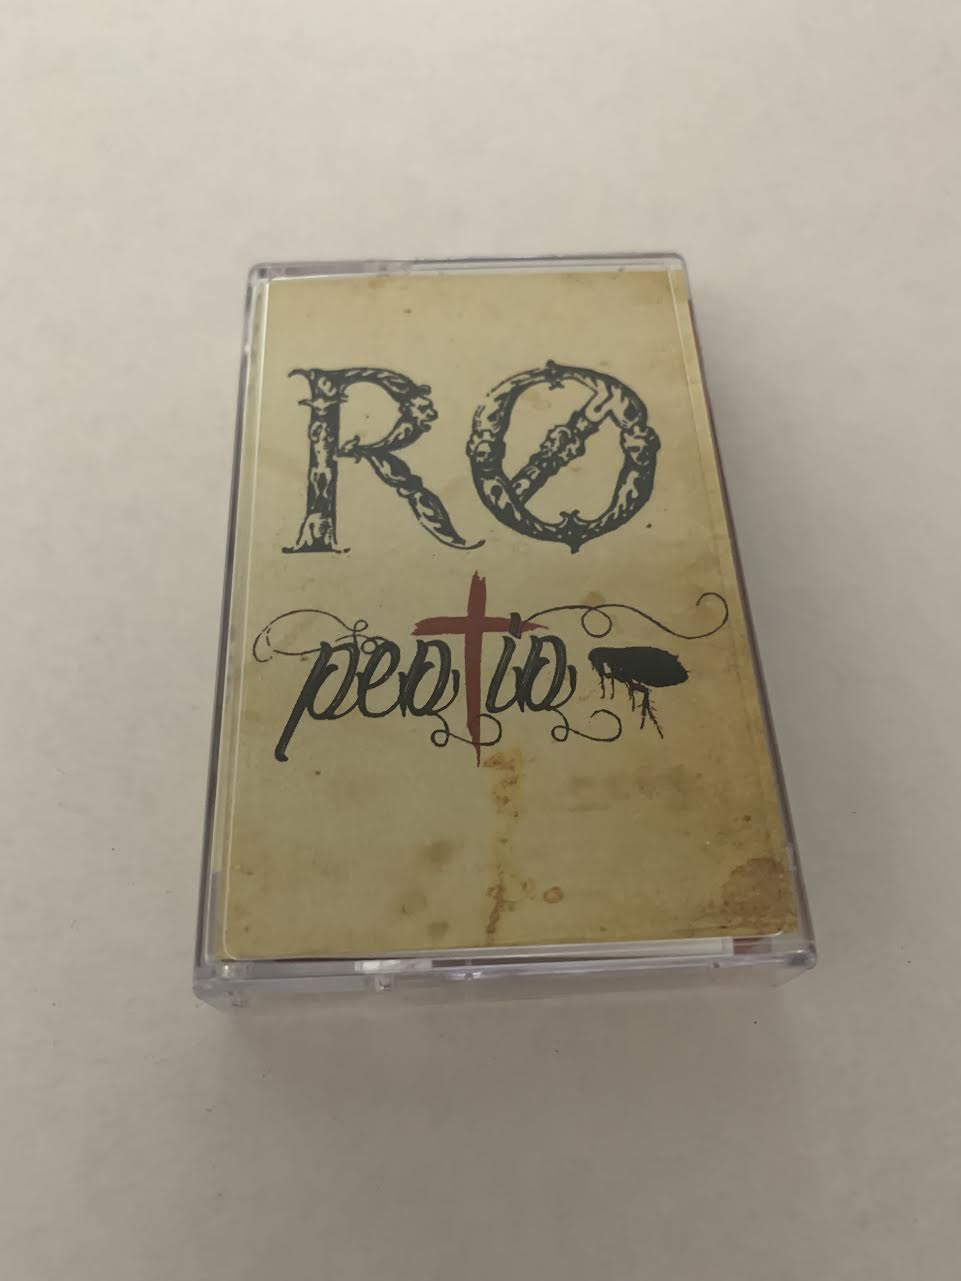 R0 - Pestis [Dark Ambient] (Mystic Timbre - Tape - 1/28/20)